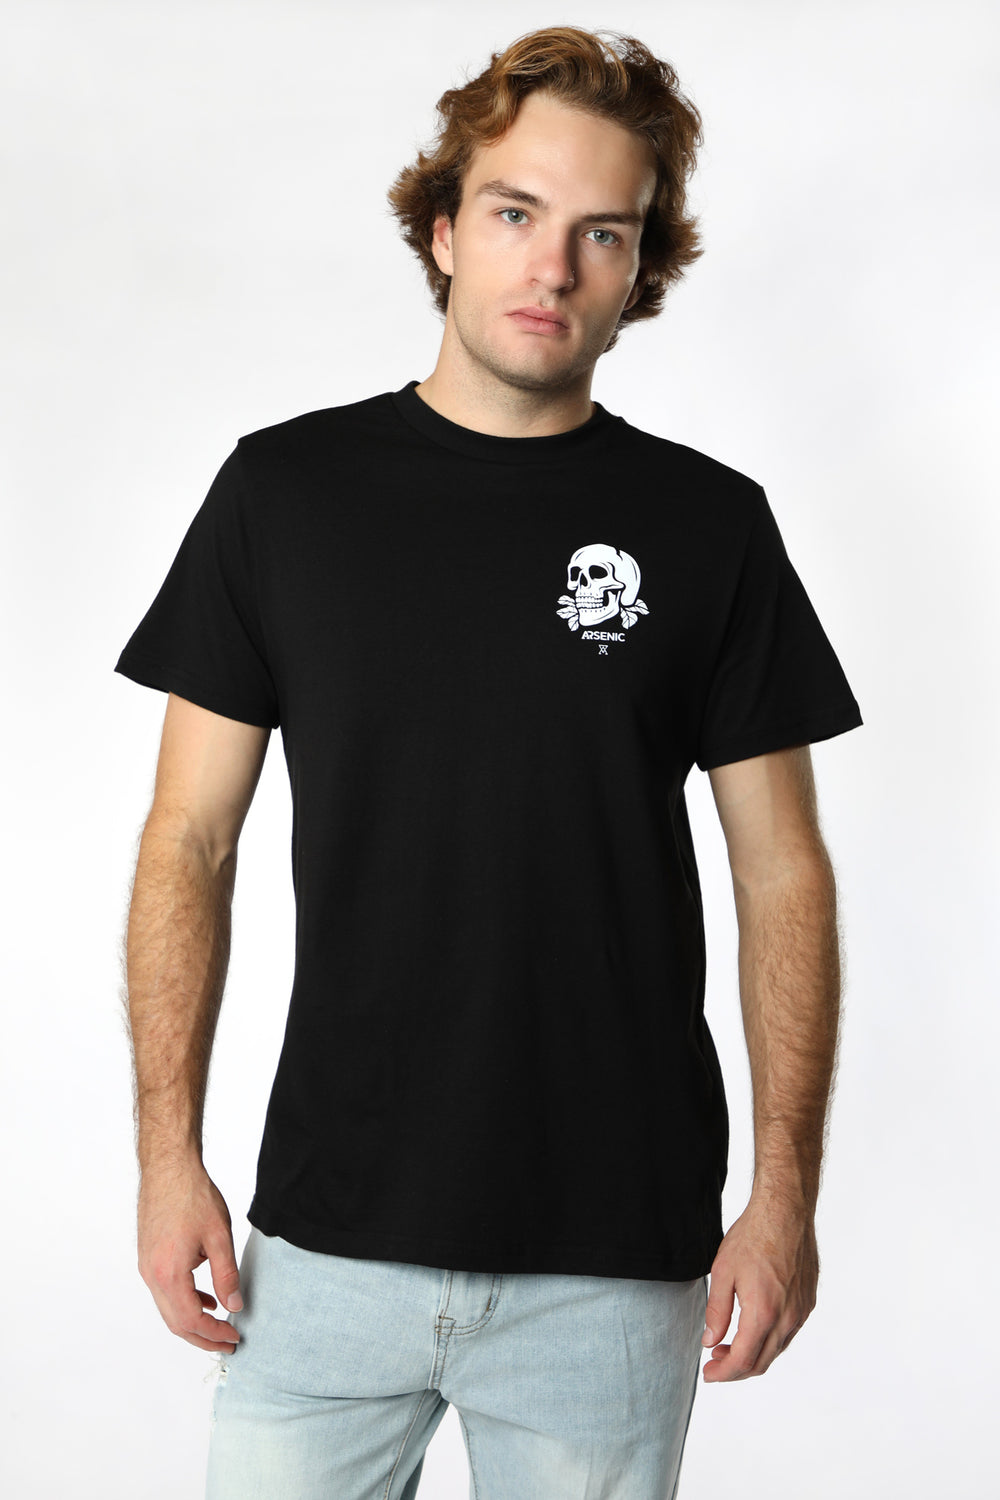 T-Shirt Imprimé Bouquet de Crânes Arsenic Homme T-Shirt Imprimé Bouquet de Crânes Arsenic Homme